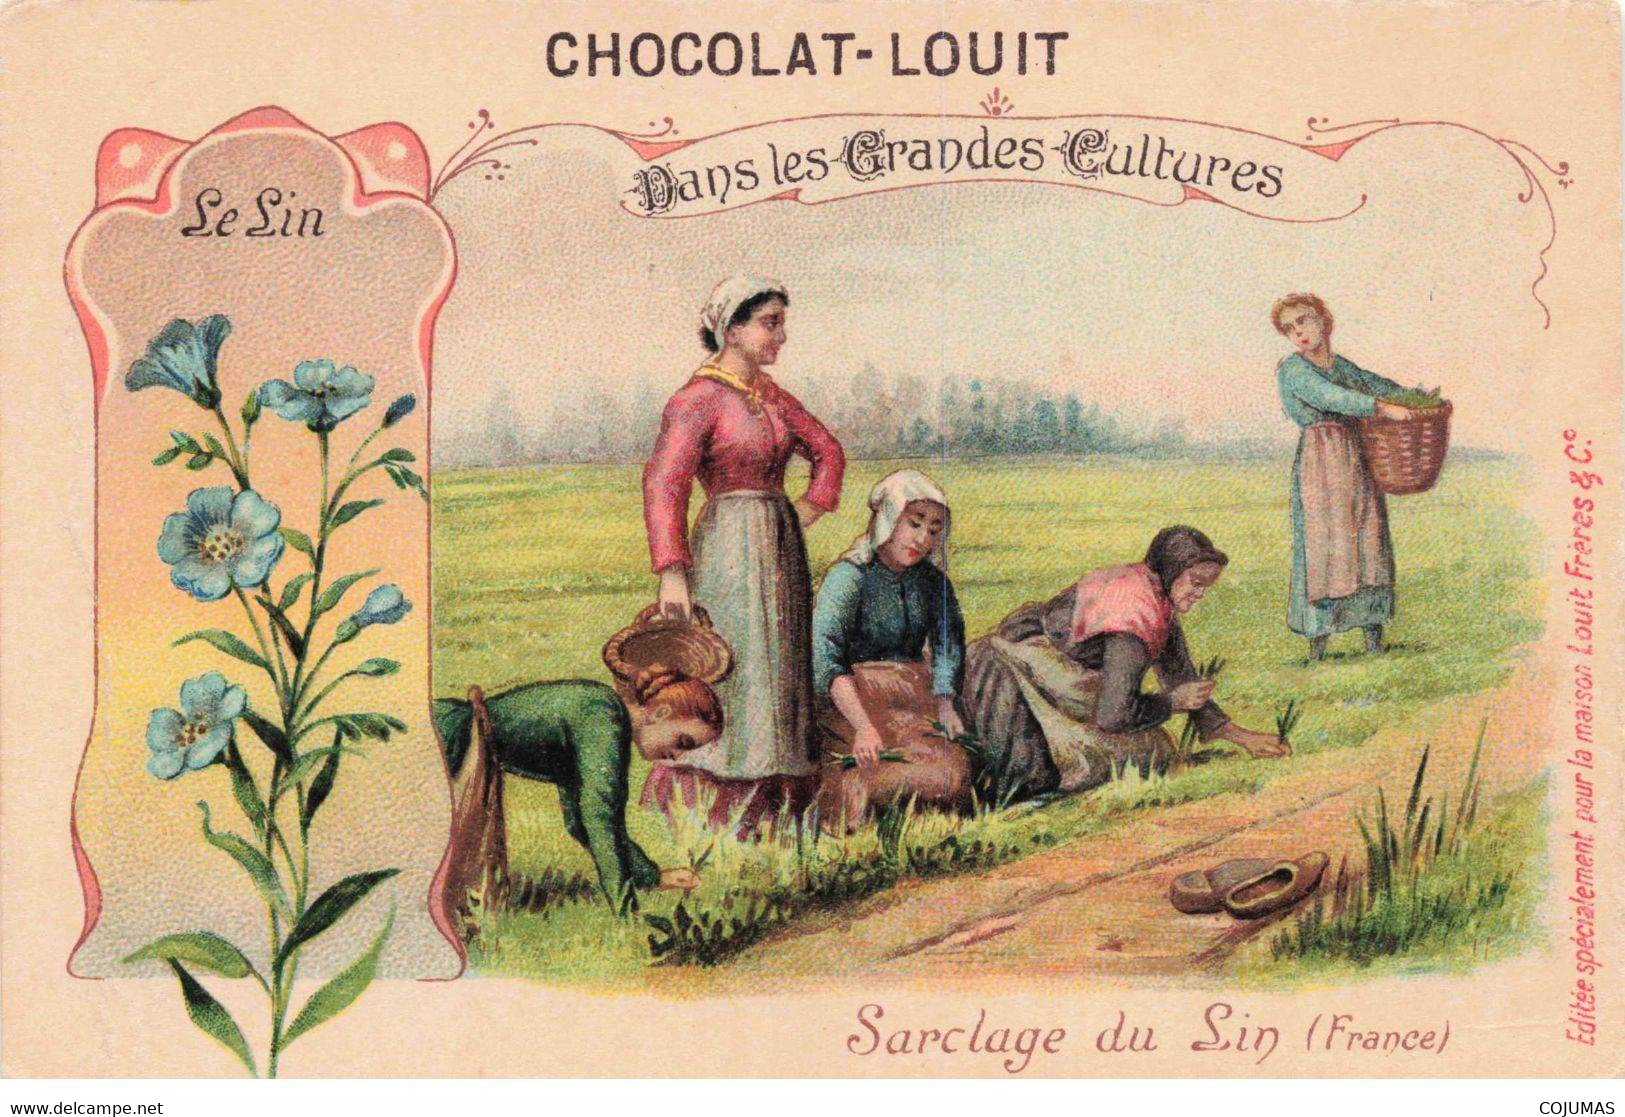 CHROMOS - S00928 - Chocolat Louis - Culture - Sarclage Du Lin - France - Panier - Agriculture - 10,5x7cm Env-L1 - Louit